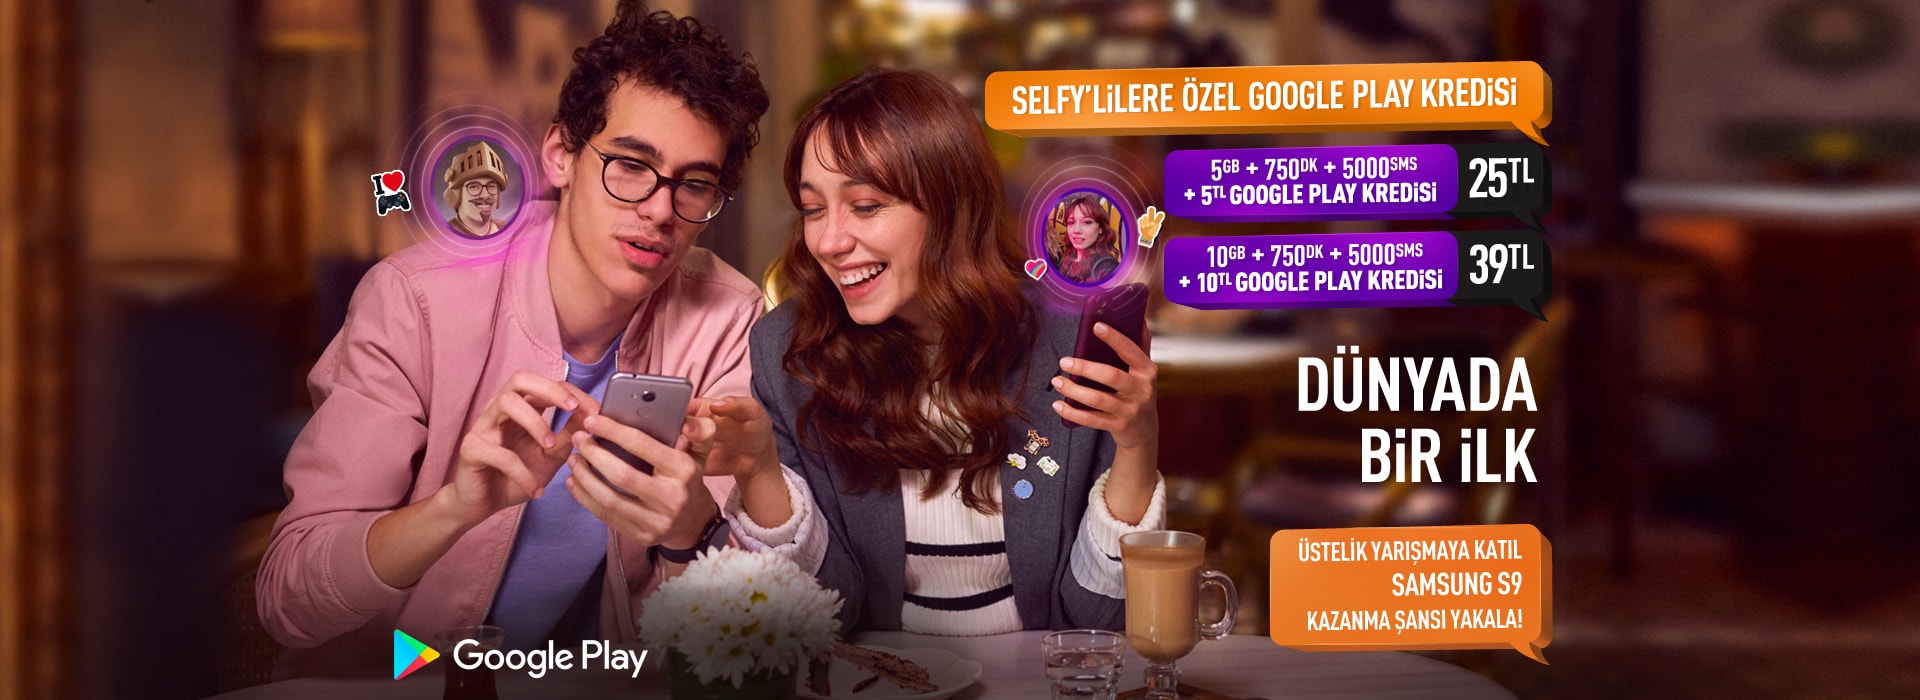 Türk Telekom Selfy’den Google Play kredili yeni tarifeler